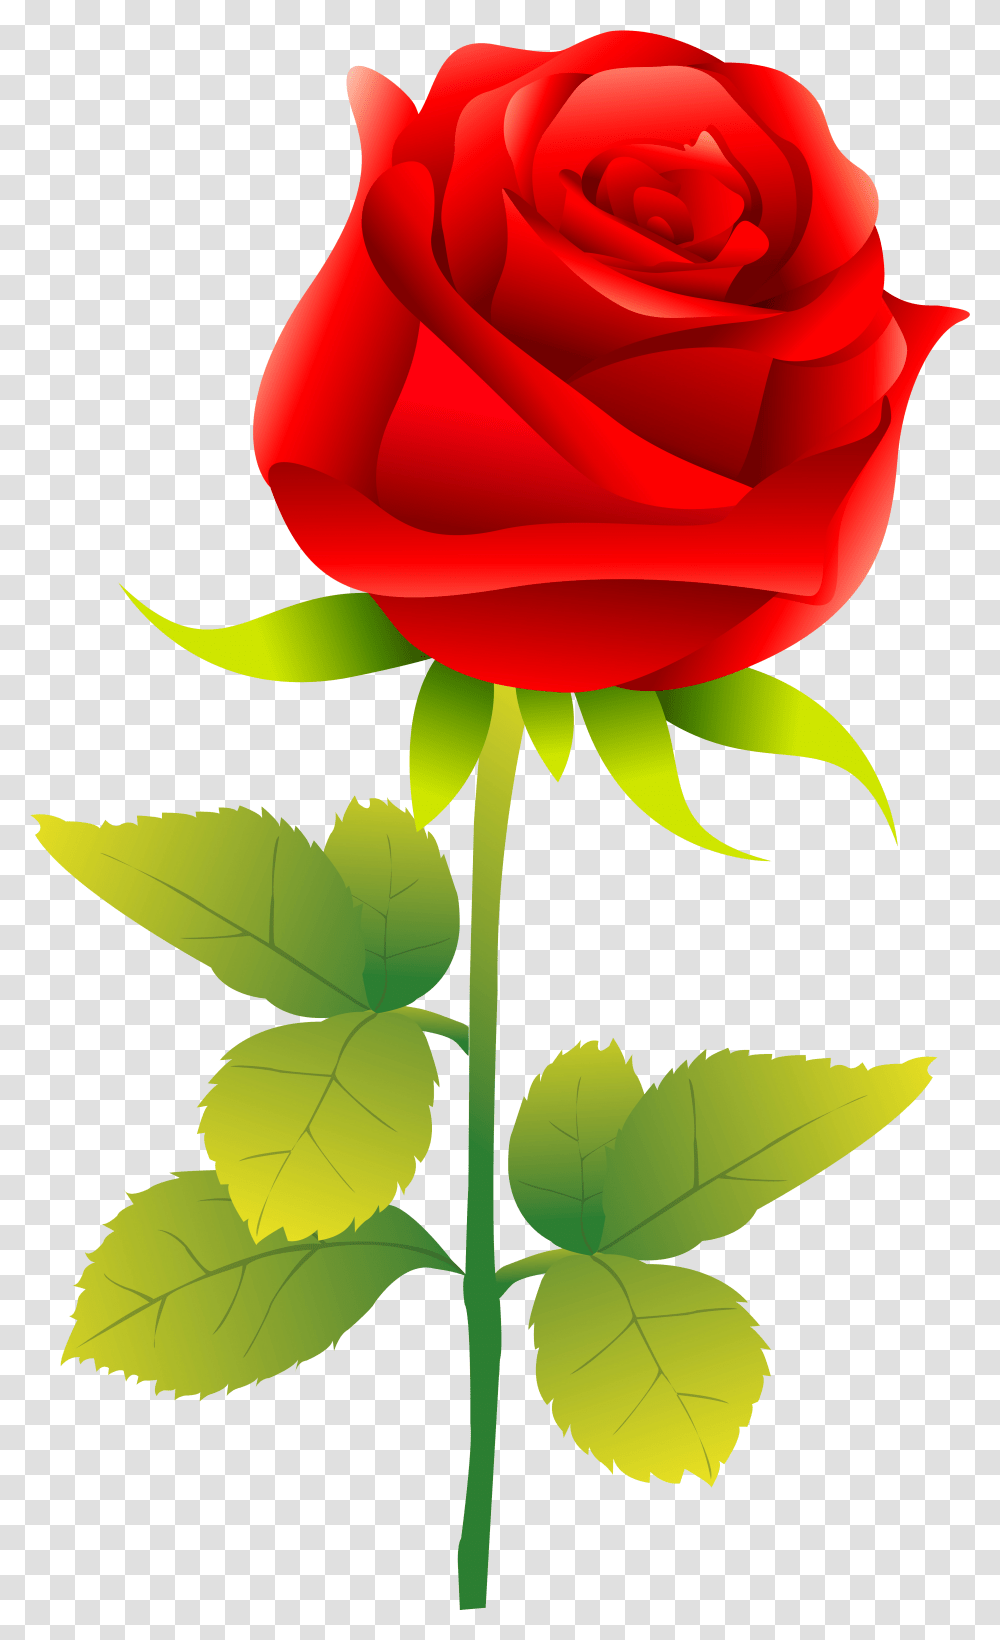 Rose Clip Art Rose Vector Free, Flower, Plant, Blossom, Leaf Transparent Png